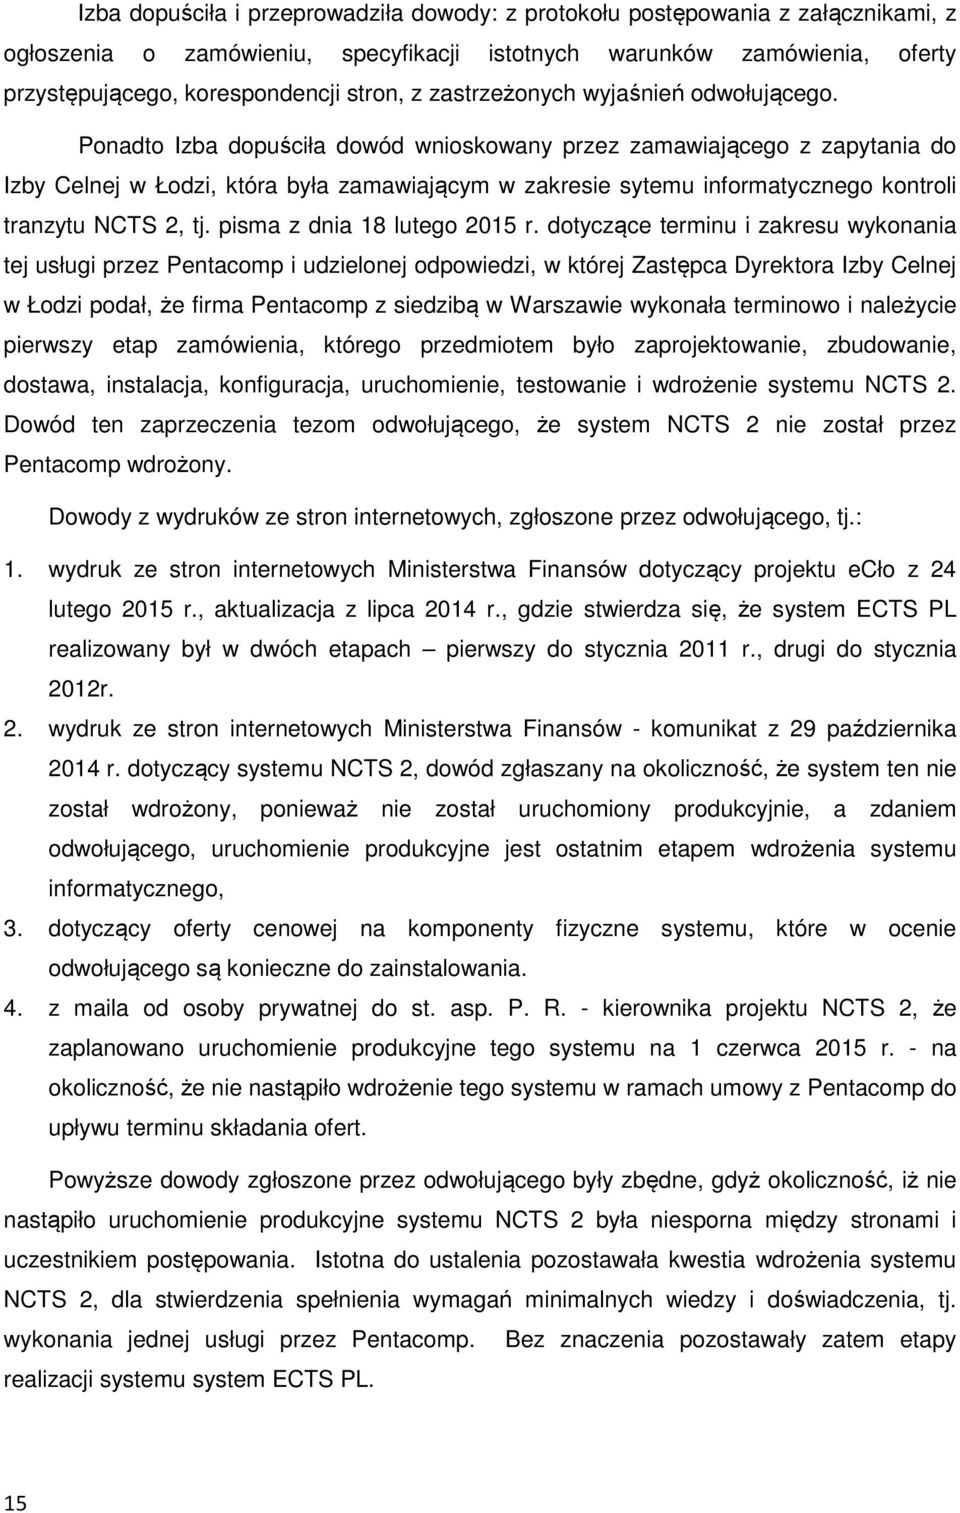 Ponadto Izba dopuściła dowód wnioskowany przez zamawiającego z zapytania do Izby Celnej w Łodzi, która była zamawiającym w zakresie sytemu informatycznego kontroli tranzytu NCTS 2, tj.